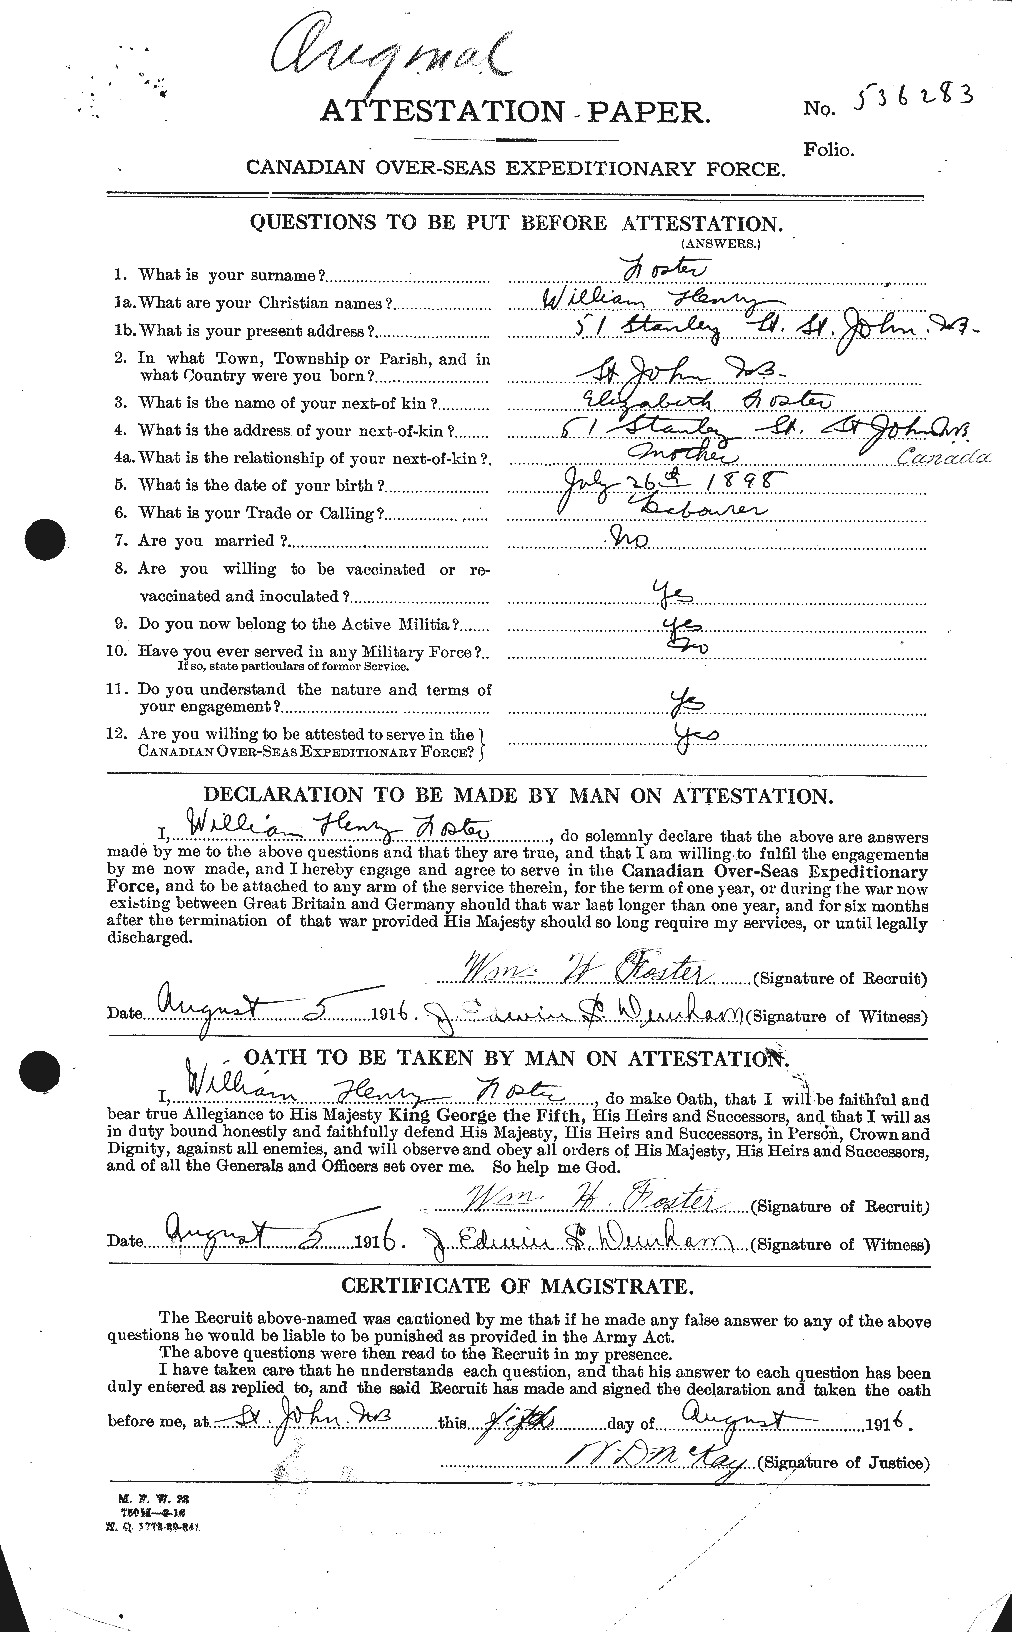 Dossiers du Personnel de la Première Guerre mondiale - CEC 328755a